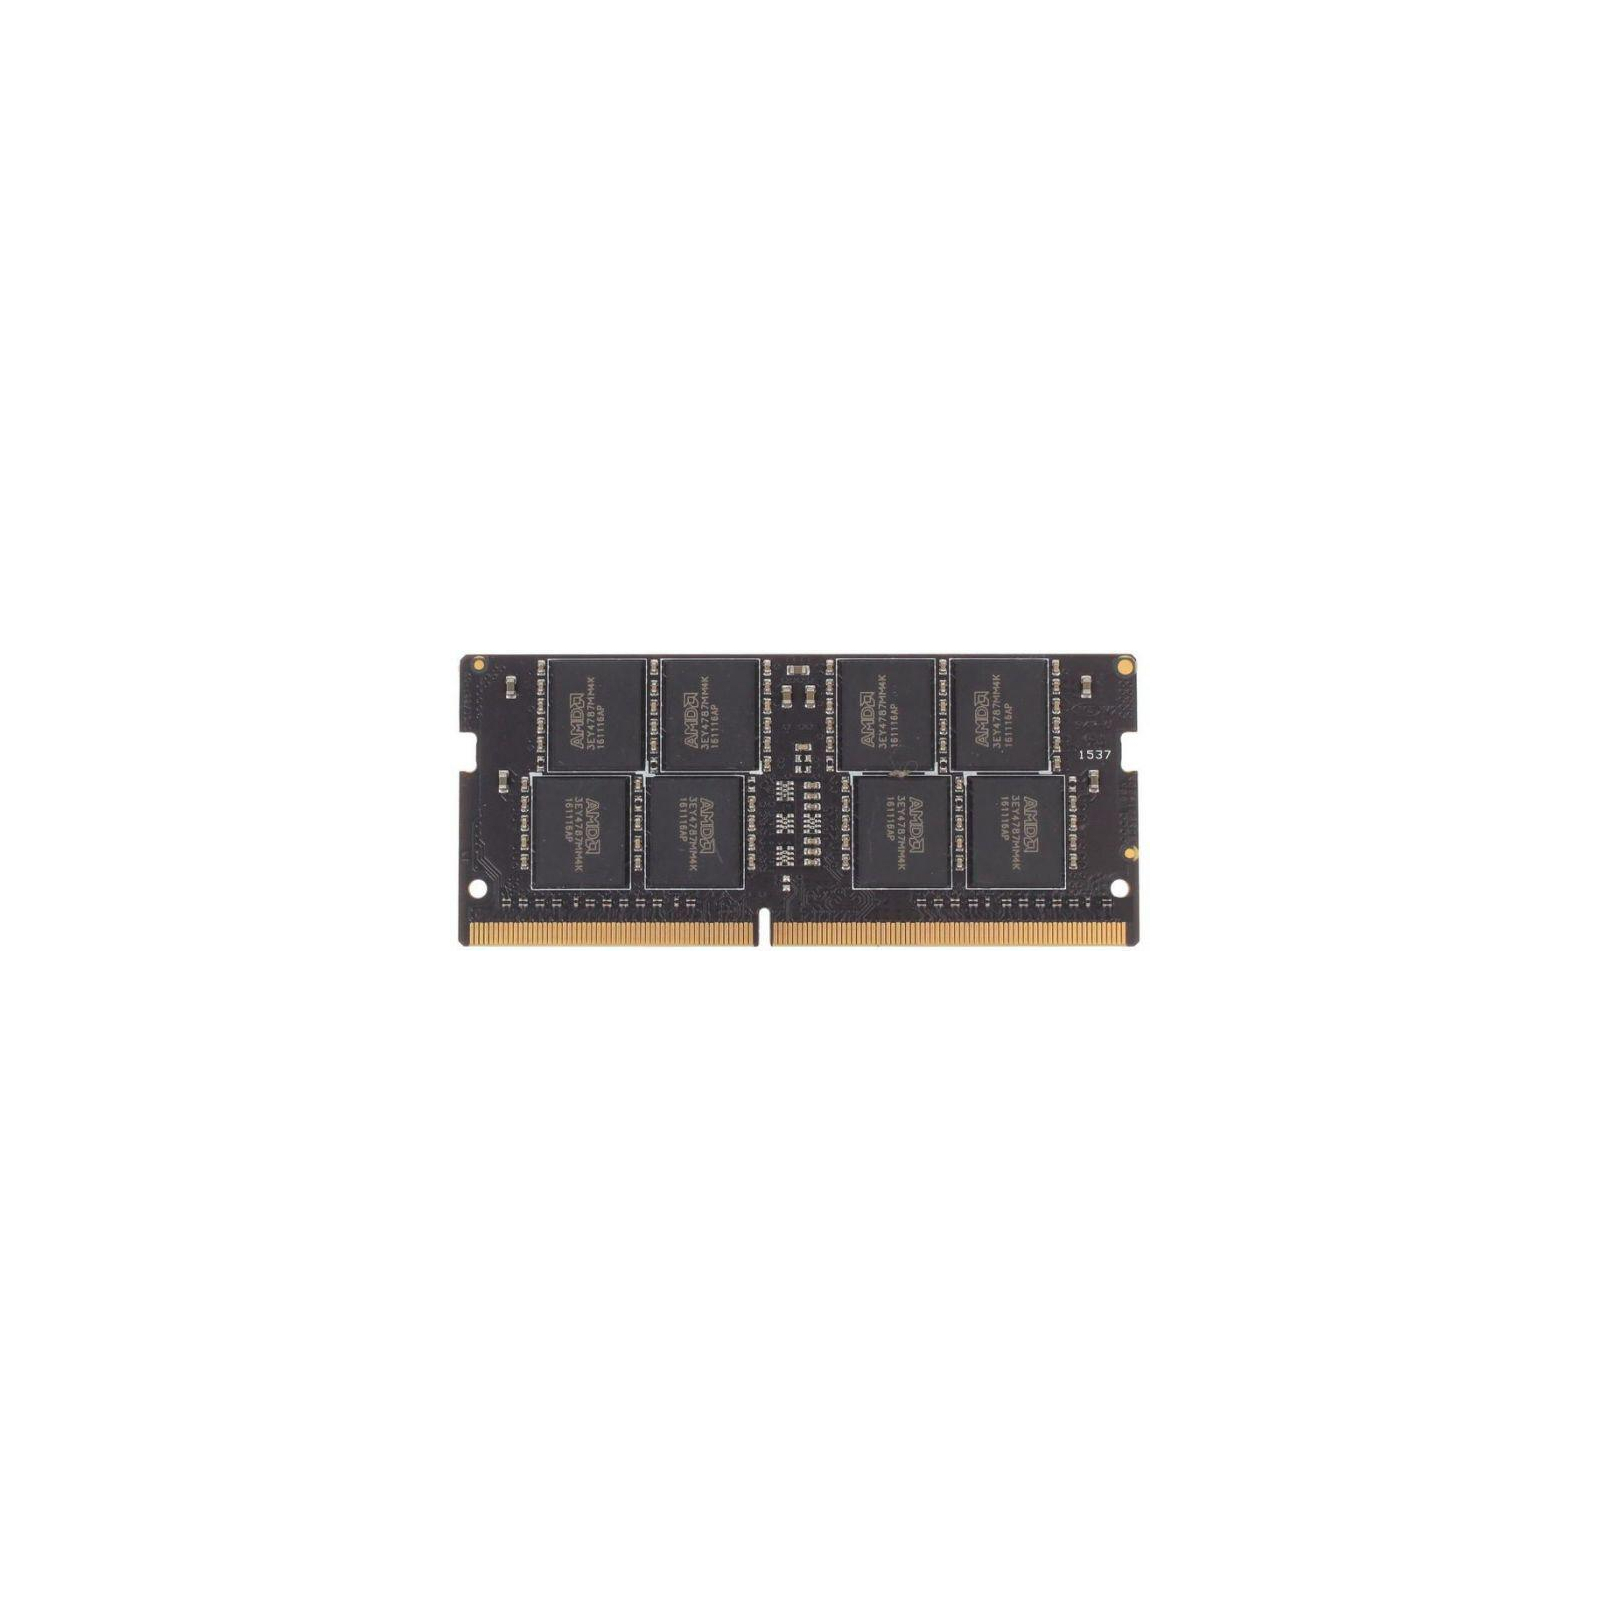 Модуль пам'яті для ноутбука SoDIMM DDR4 8GB 2400 MHz Performance Series AMD (R748G2400S2S-U)